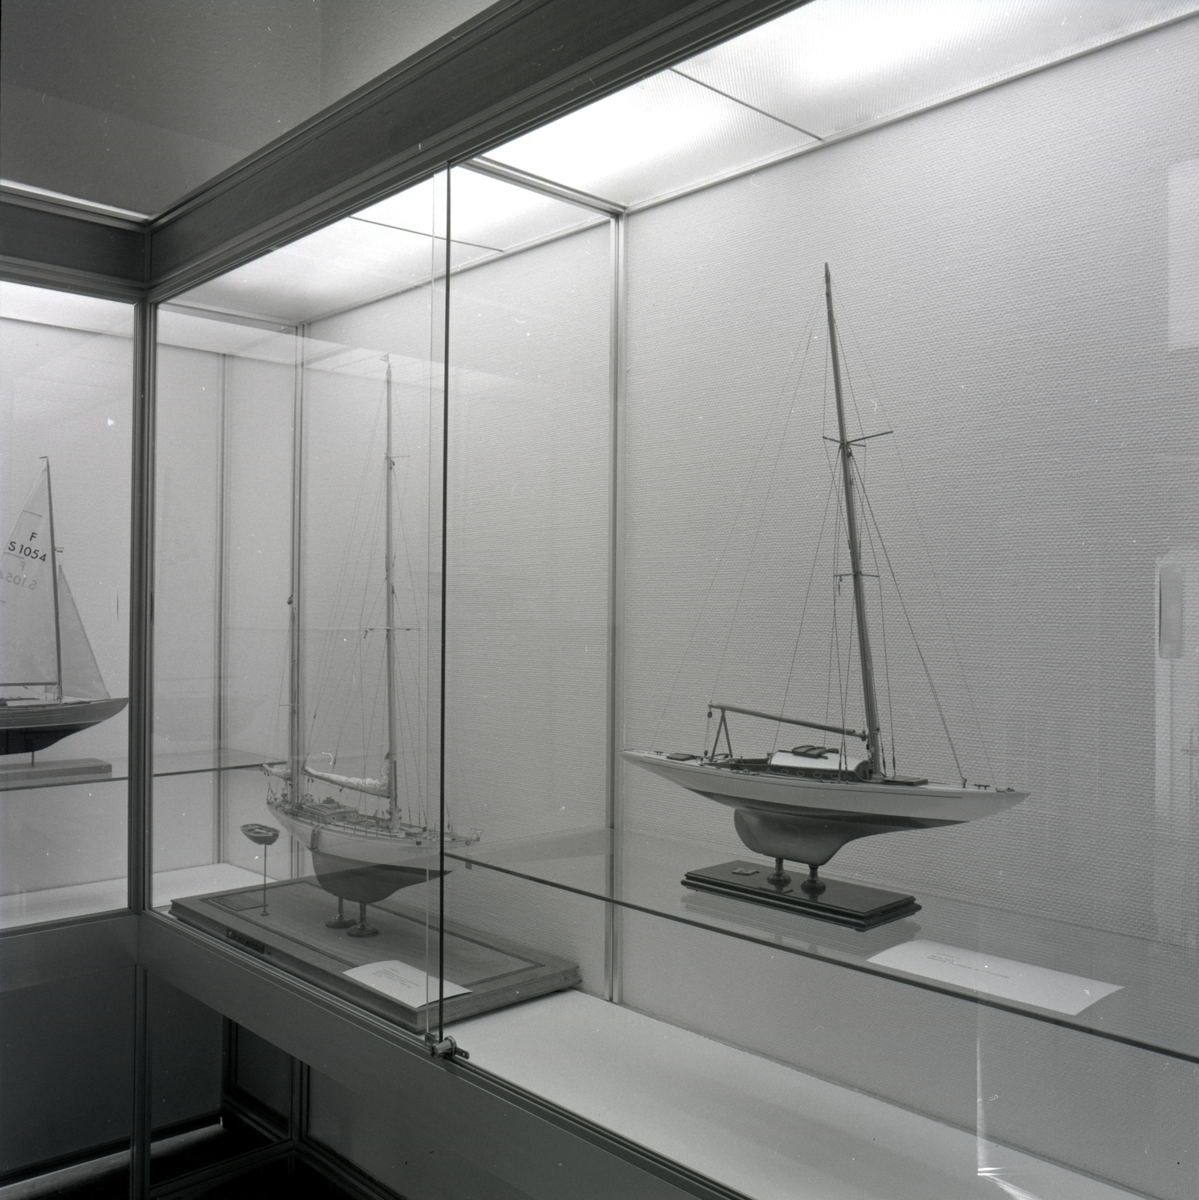 Utställning i trappmonter med fartygsmodeller av segelbåtar.